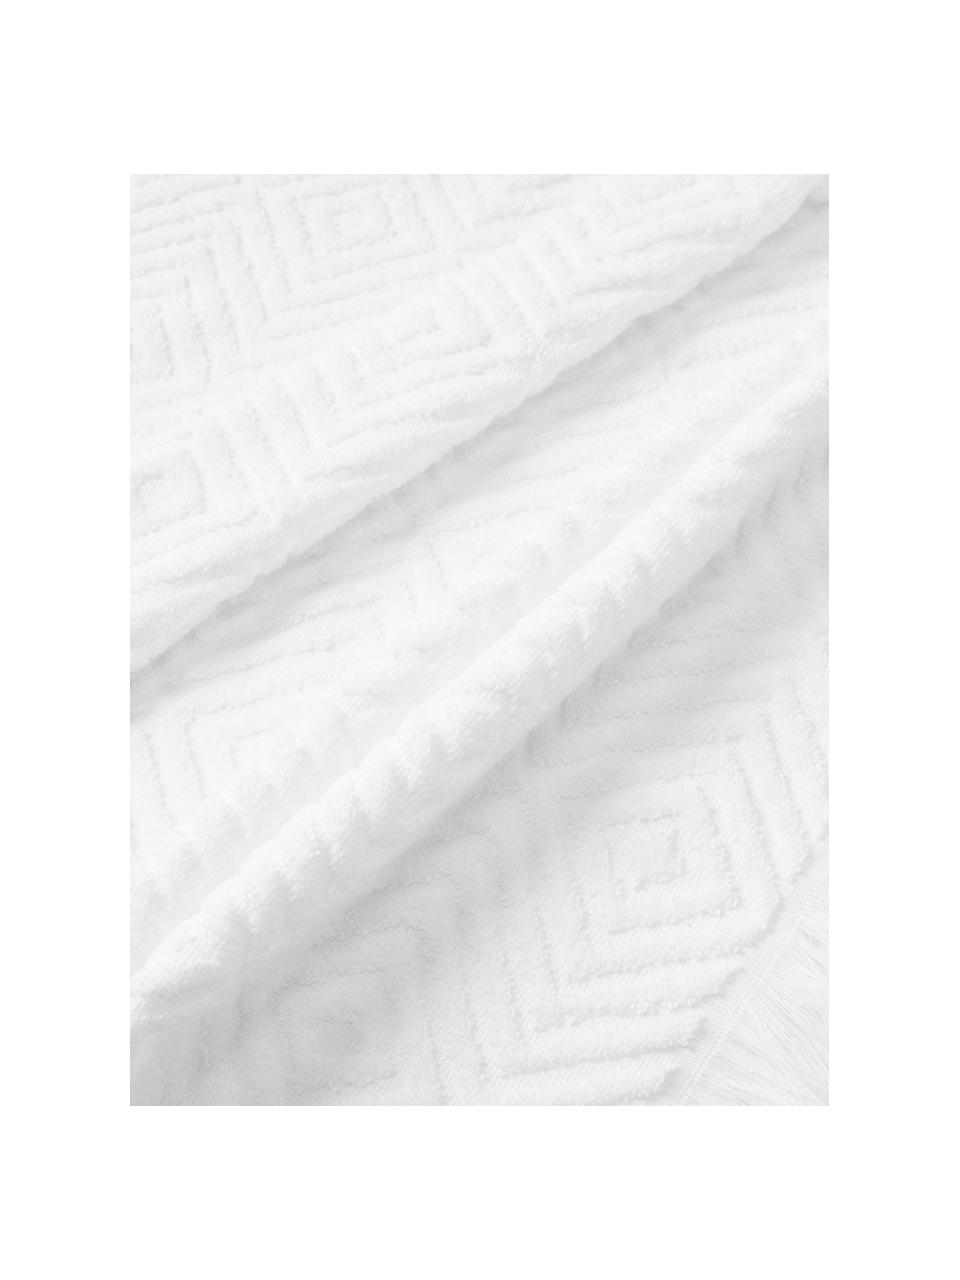 Handtuch-Set Jacqui mit Hoch-Tief-Muster, in verschiedenen Setgrößen, Weiß, 4er-Set (Handtuch & Duschtuch)